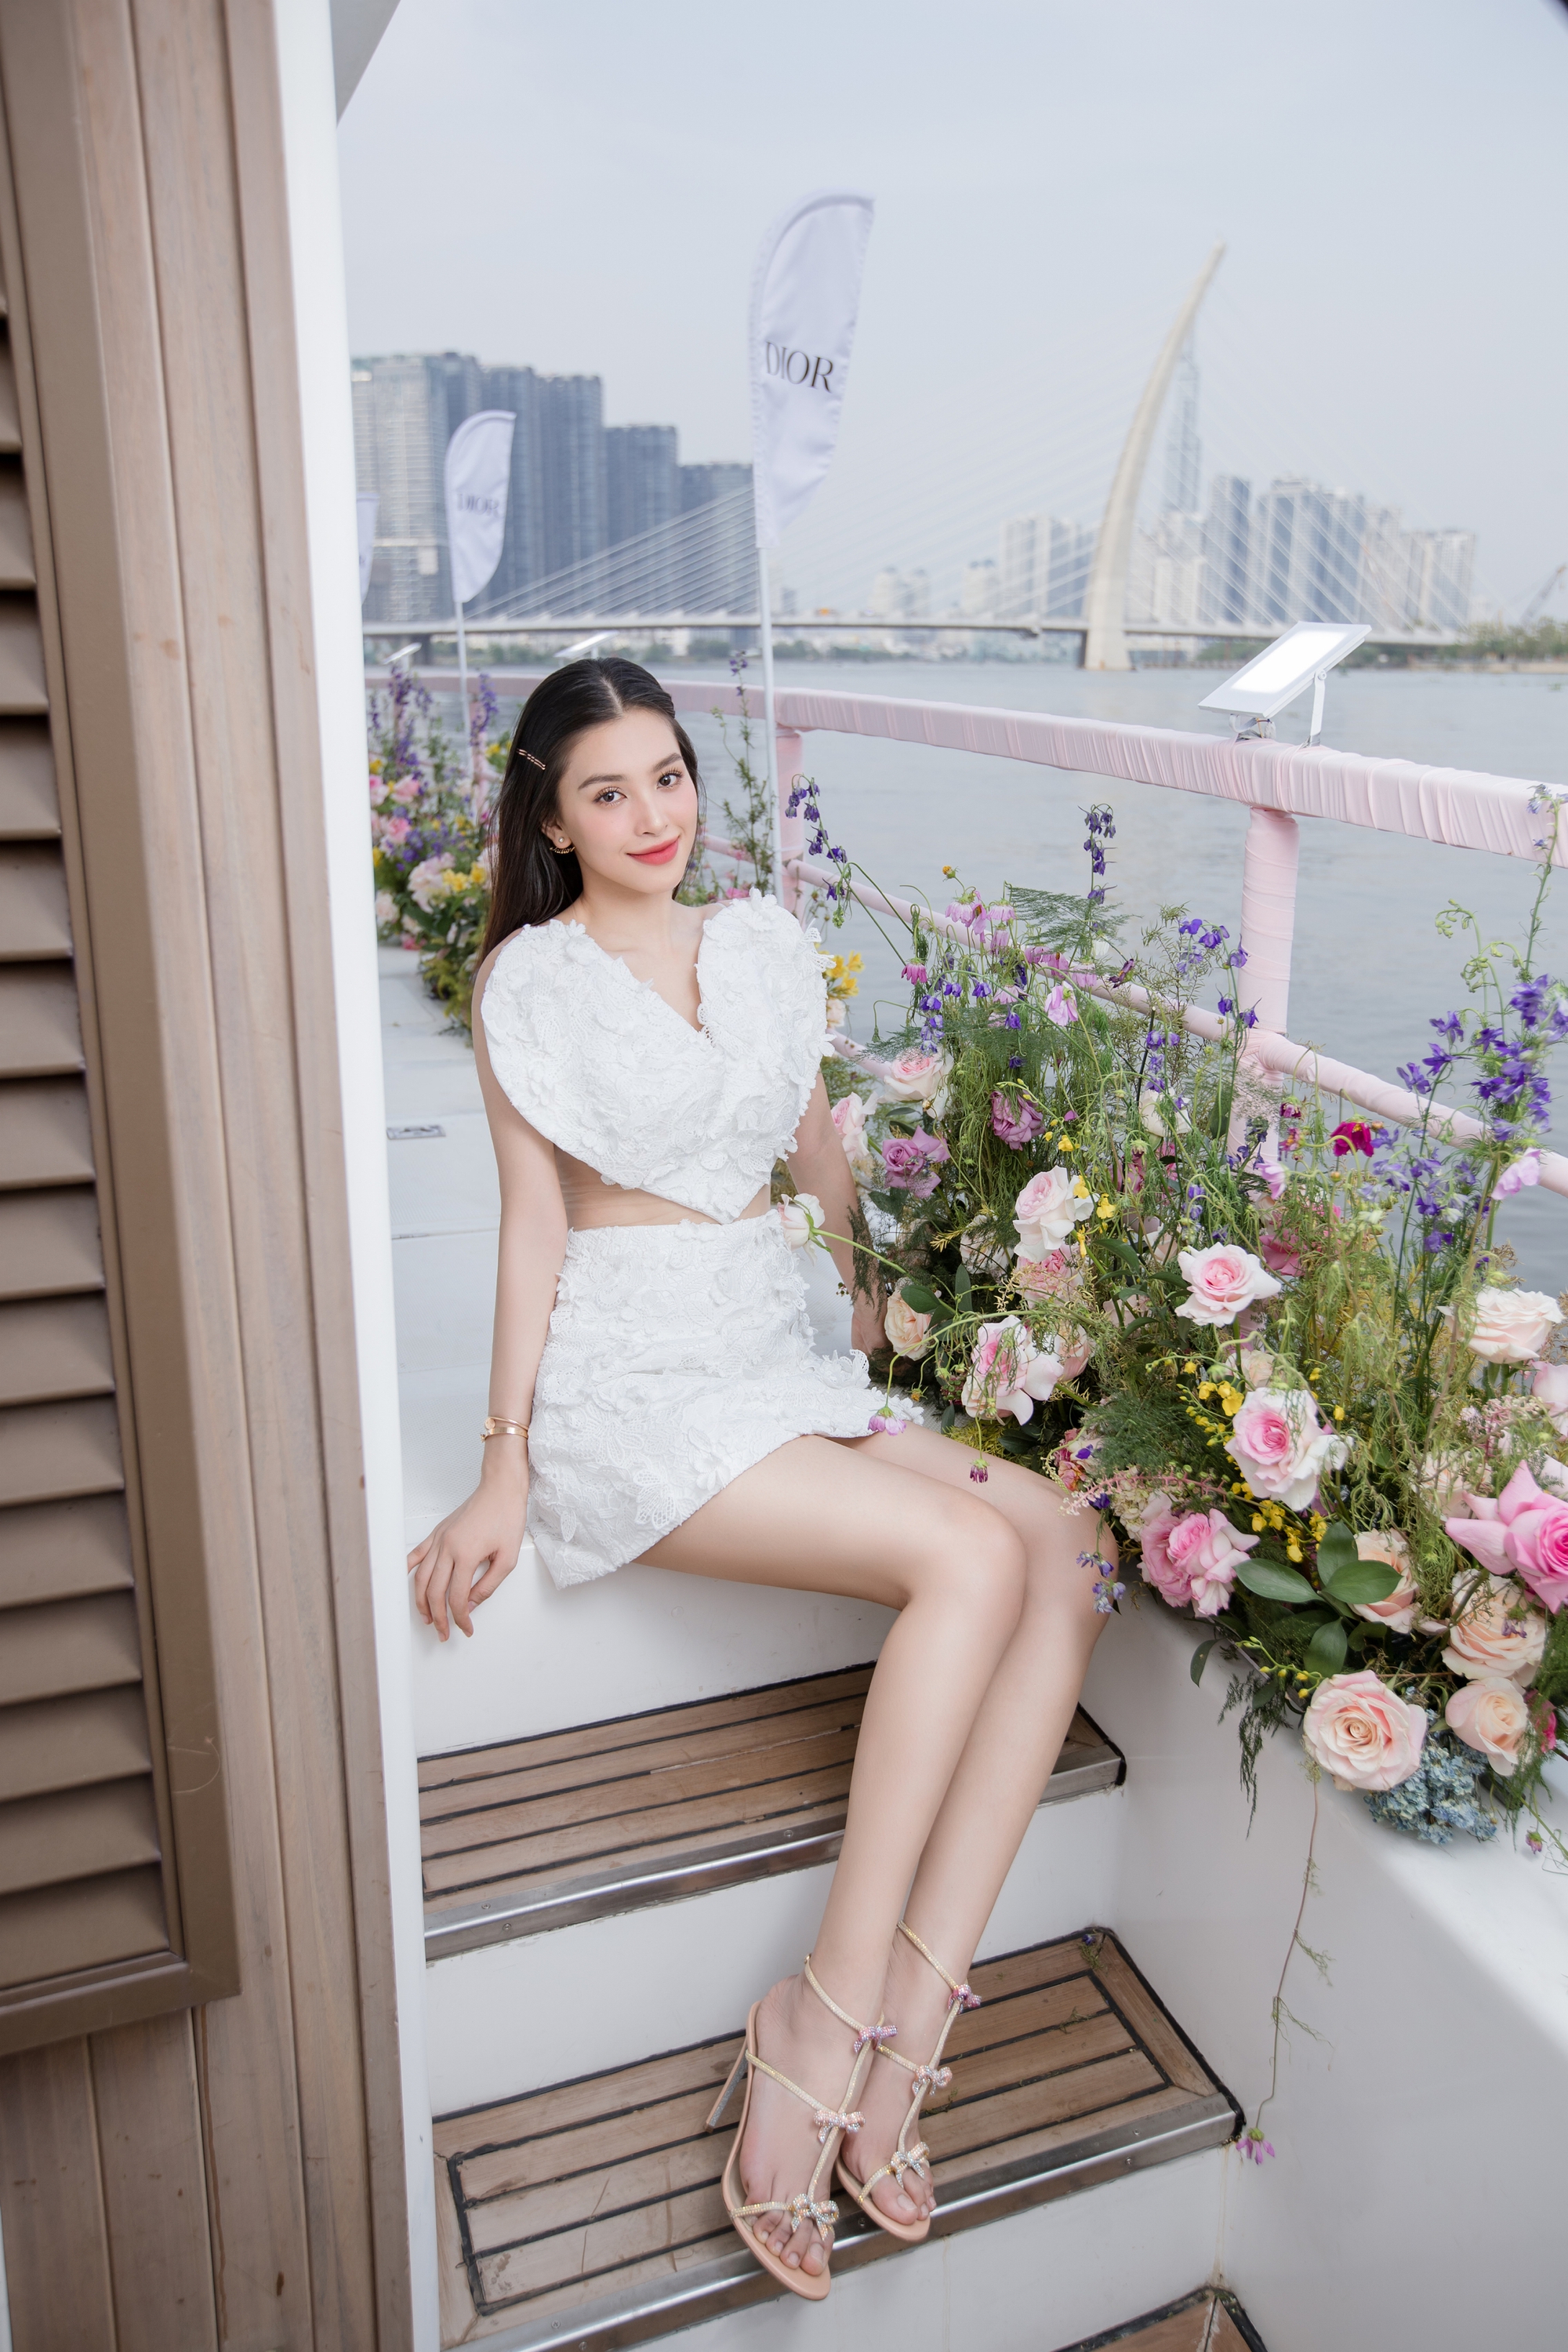 Hoa hậu Tiểu Vy tung loạt ảnh mới, cư dân mạng xuýt xoa - Ảnh 2.